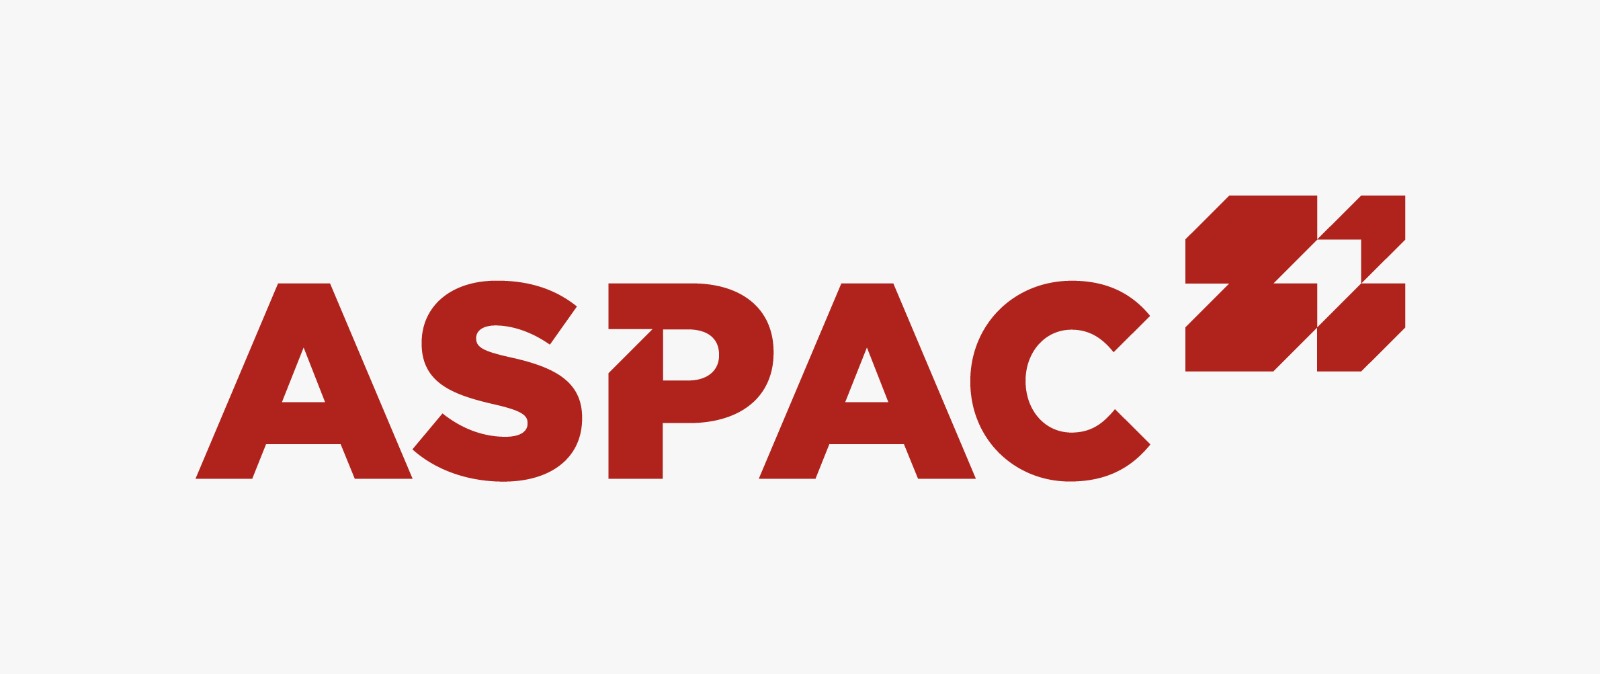 Aspac Aircargo Services Pte Ltd logo